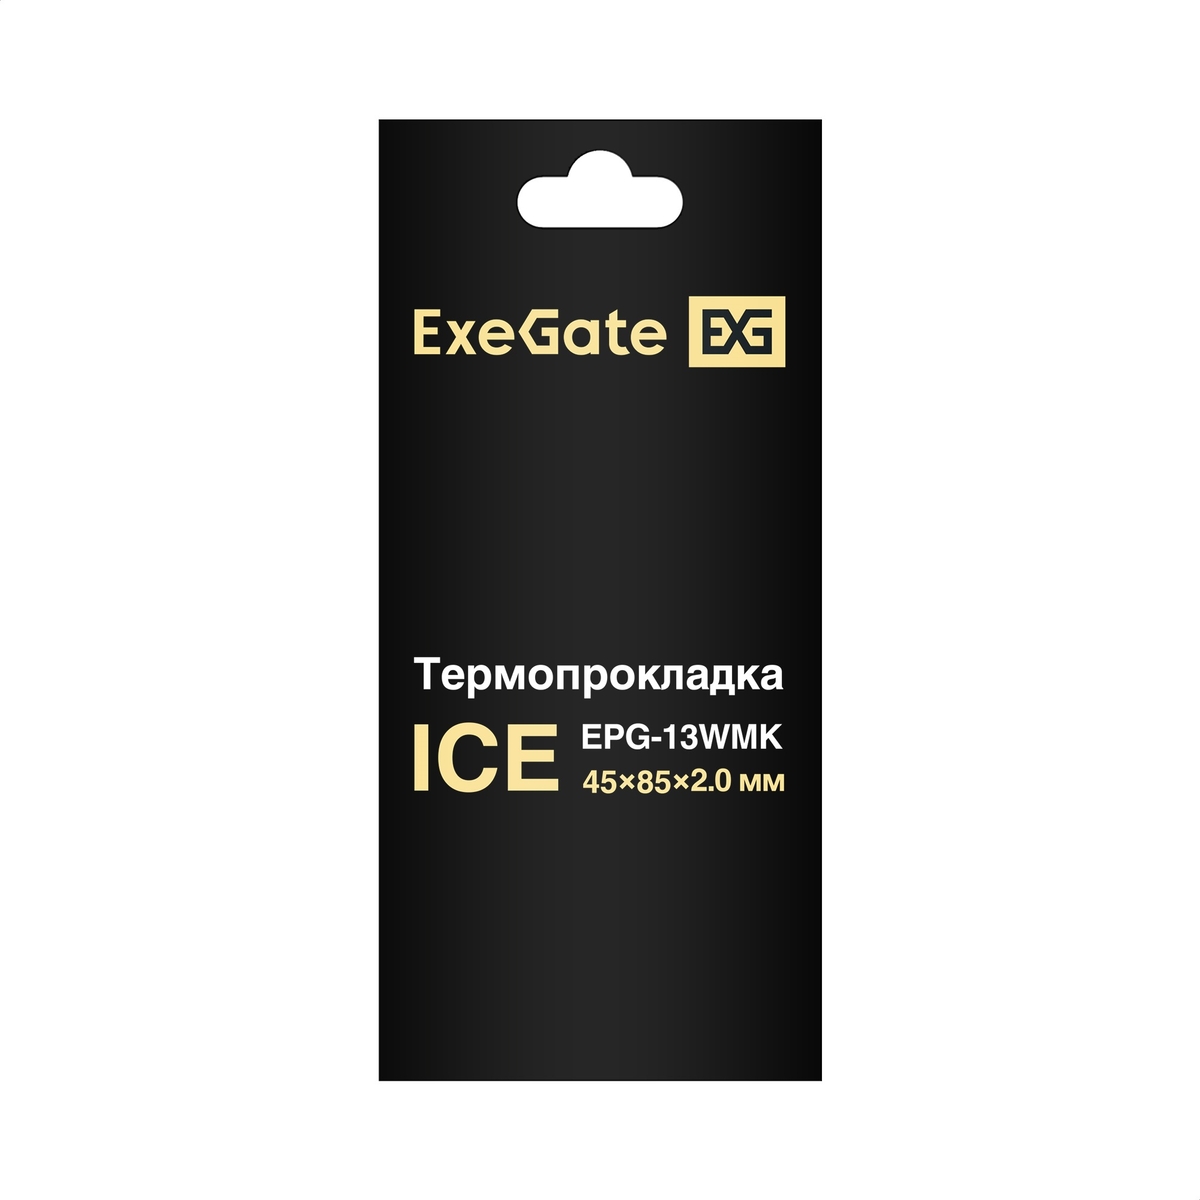  ExeGate Ice EPG-13WMK 45x85x2.0